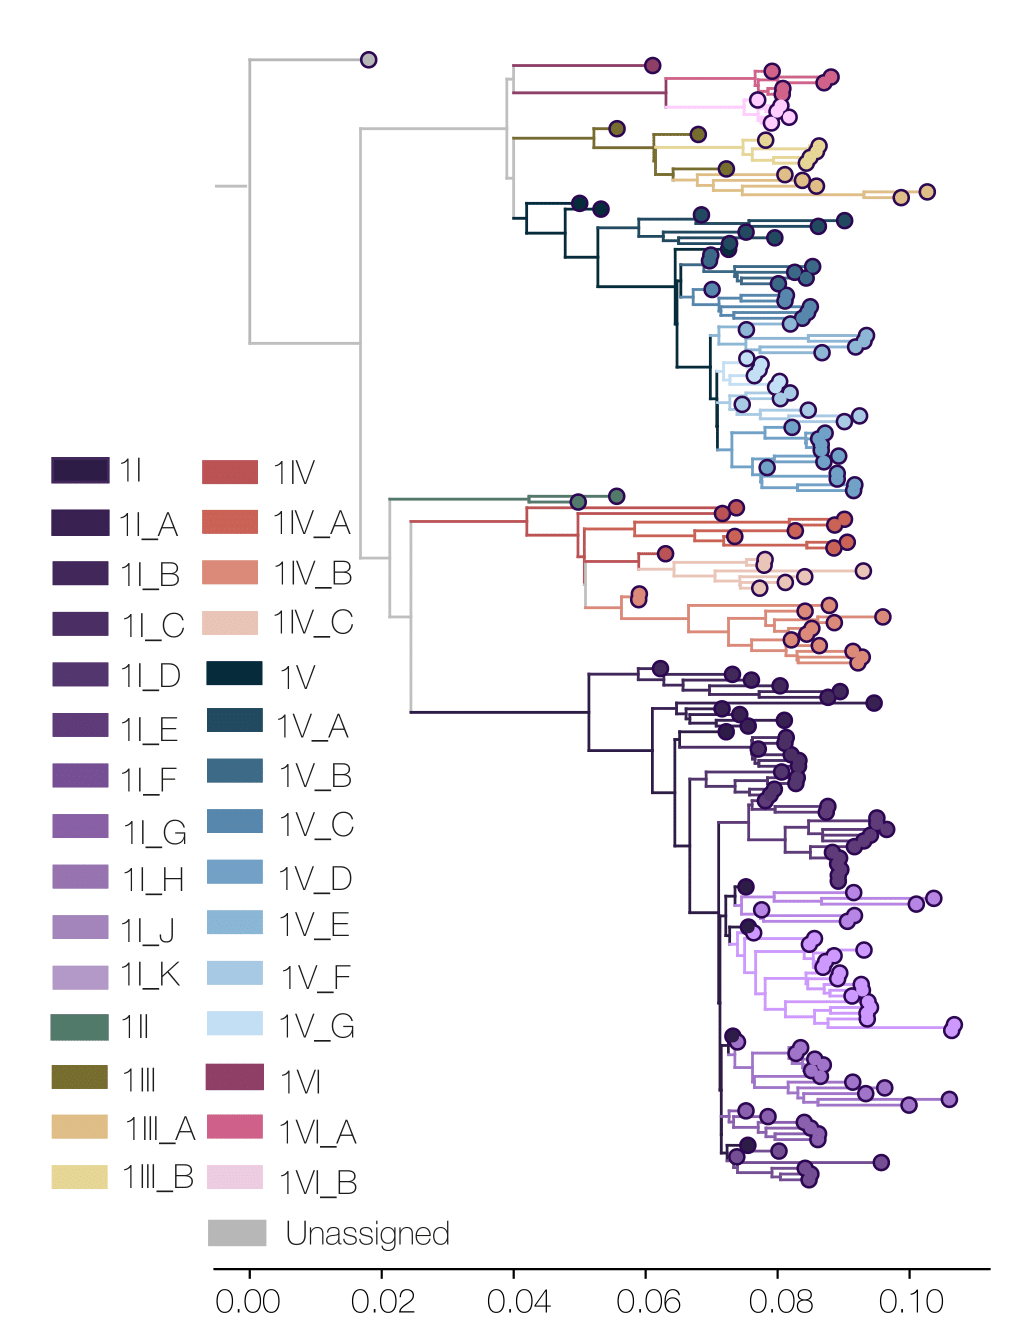 Dengue virus 1 phylogenetic tree